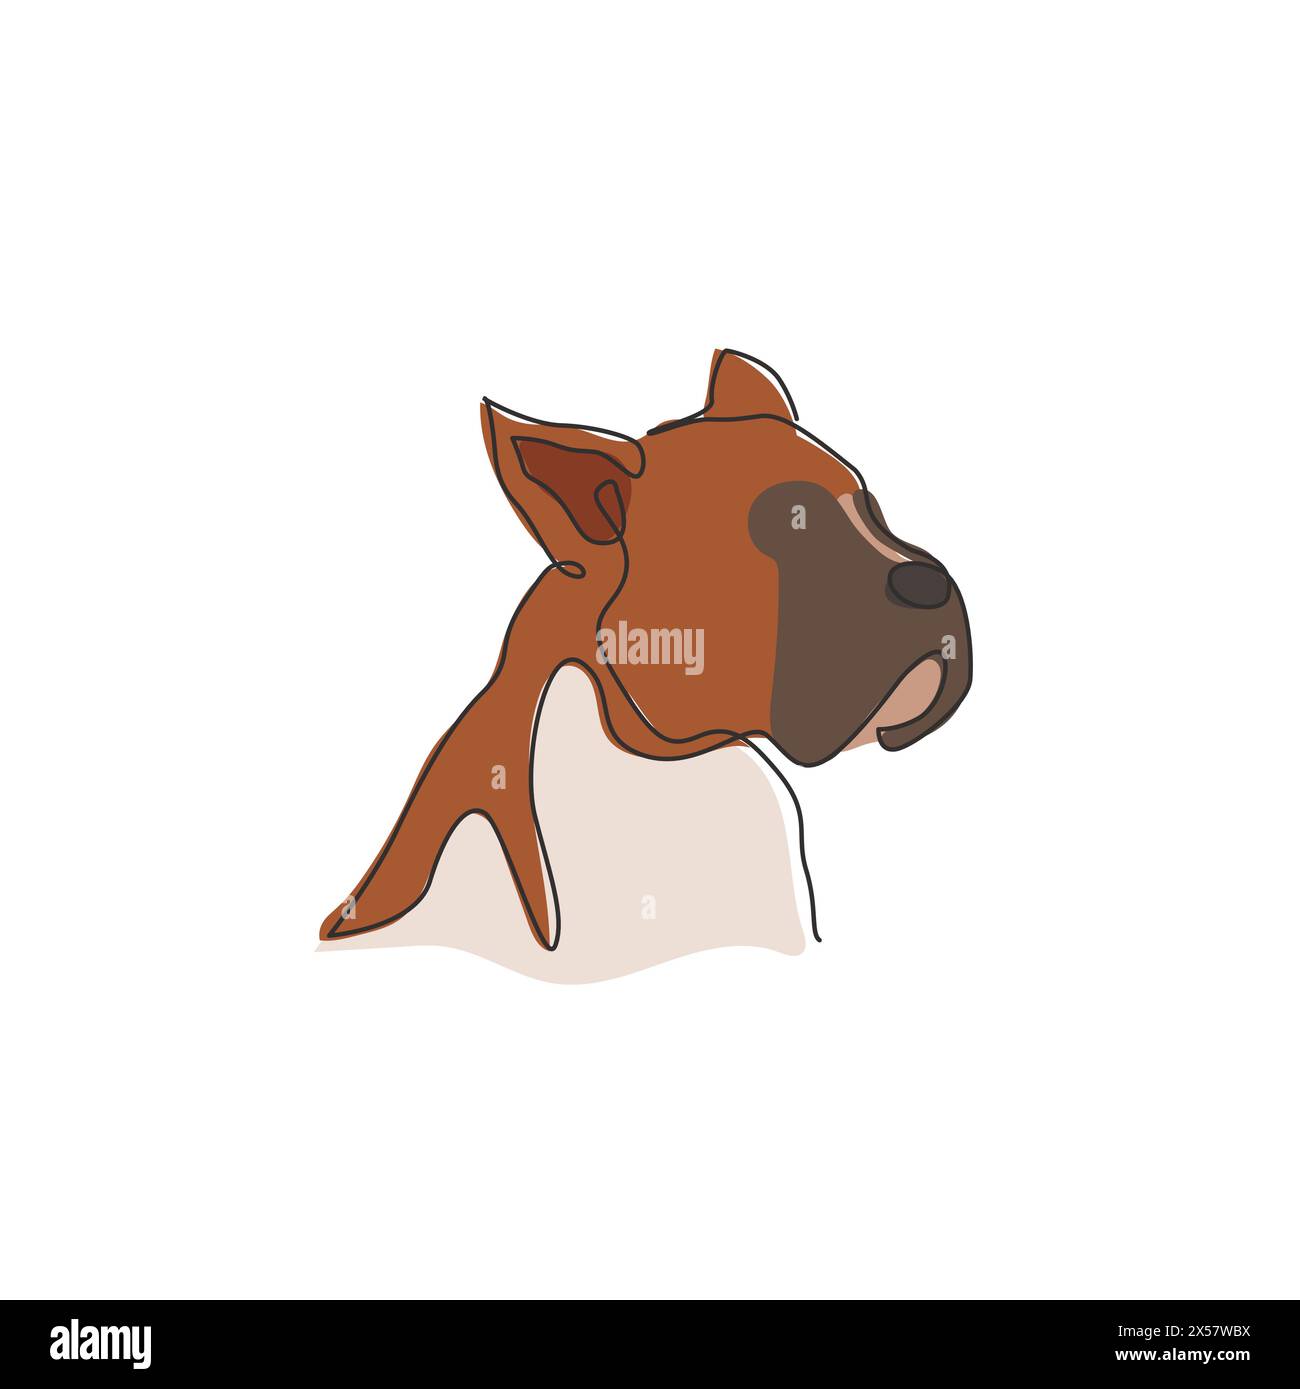 Einzelne, durchgehende Linienzeichnung mit dem Hundekopf des Boxers für das Logo des Sicherheitsunternehmens. Maskottchenkonzept für reinrassige Hunde für ein Pedigree-freundliches Haustier-Symbol Stock Vektor